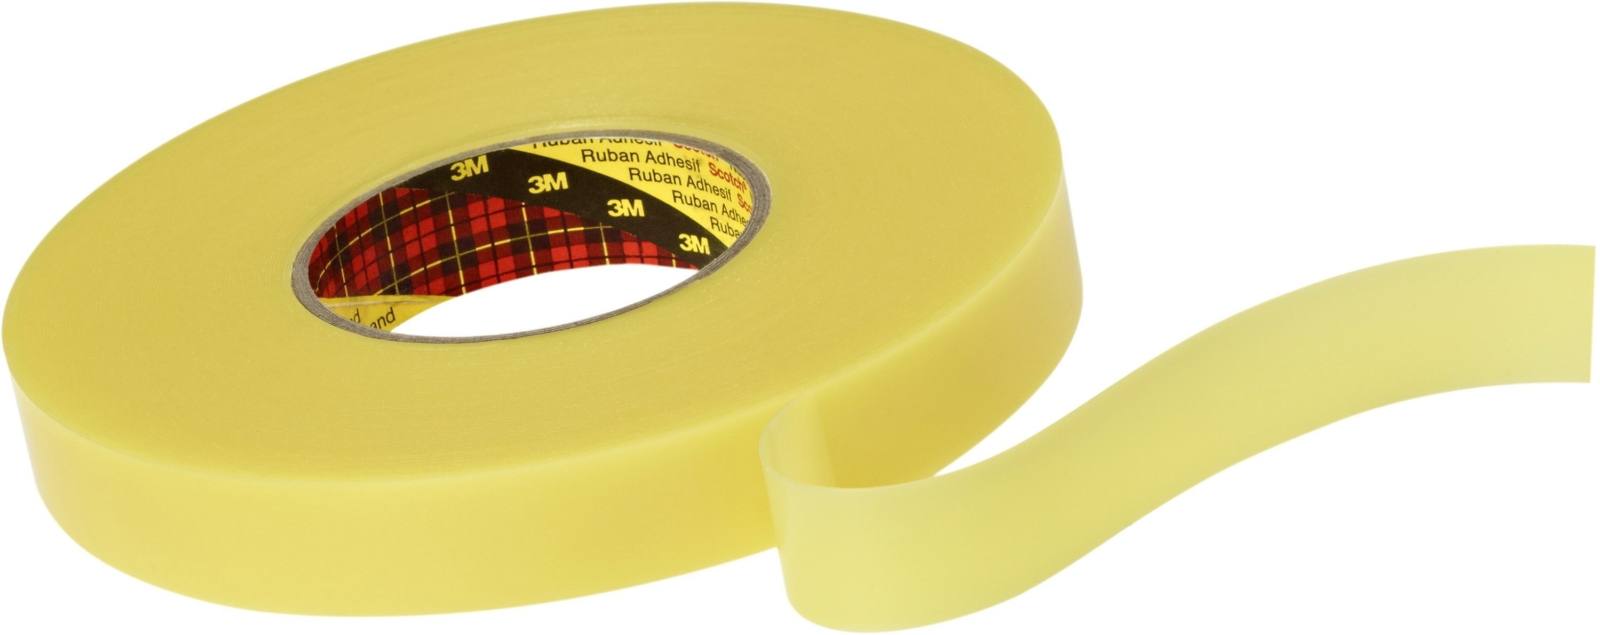 3M Dubbelzijdig verwijderbaar plakband 4656F, geel, 6 mm x 33 m, 0,6 mm